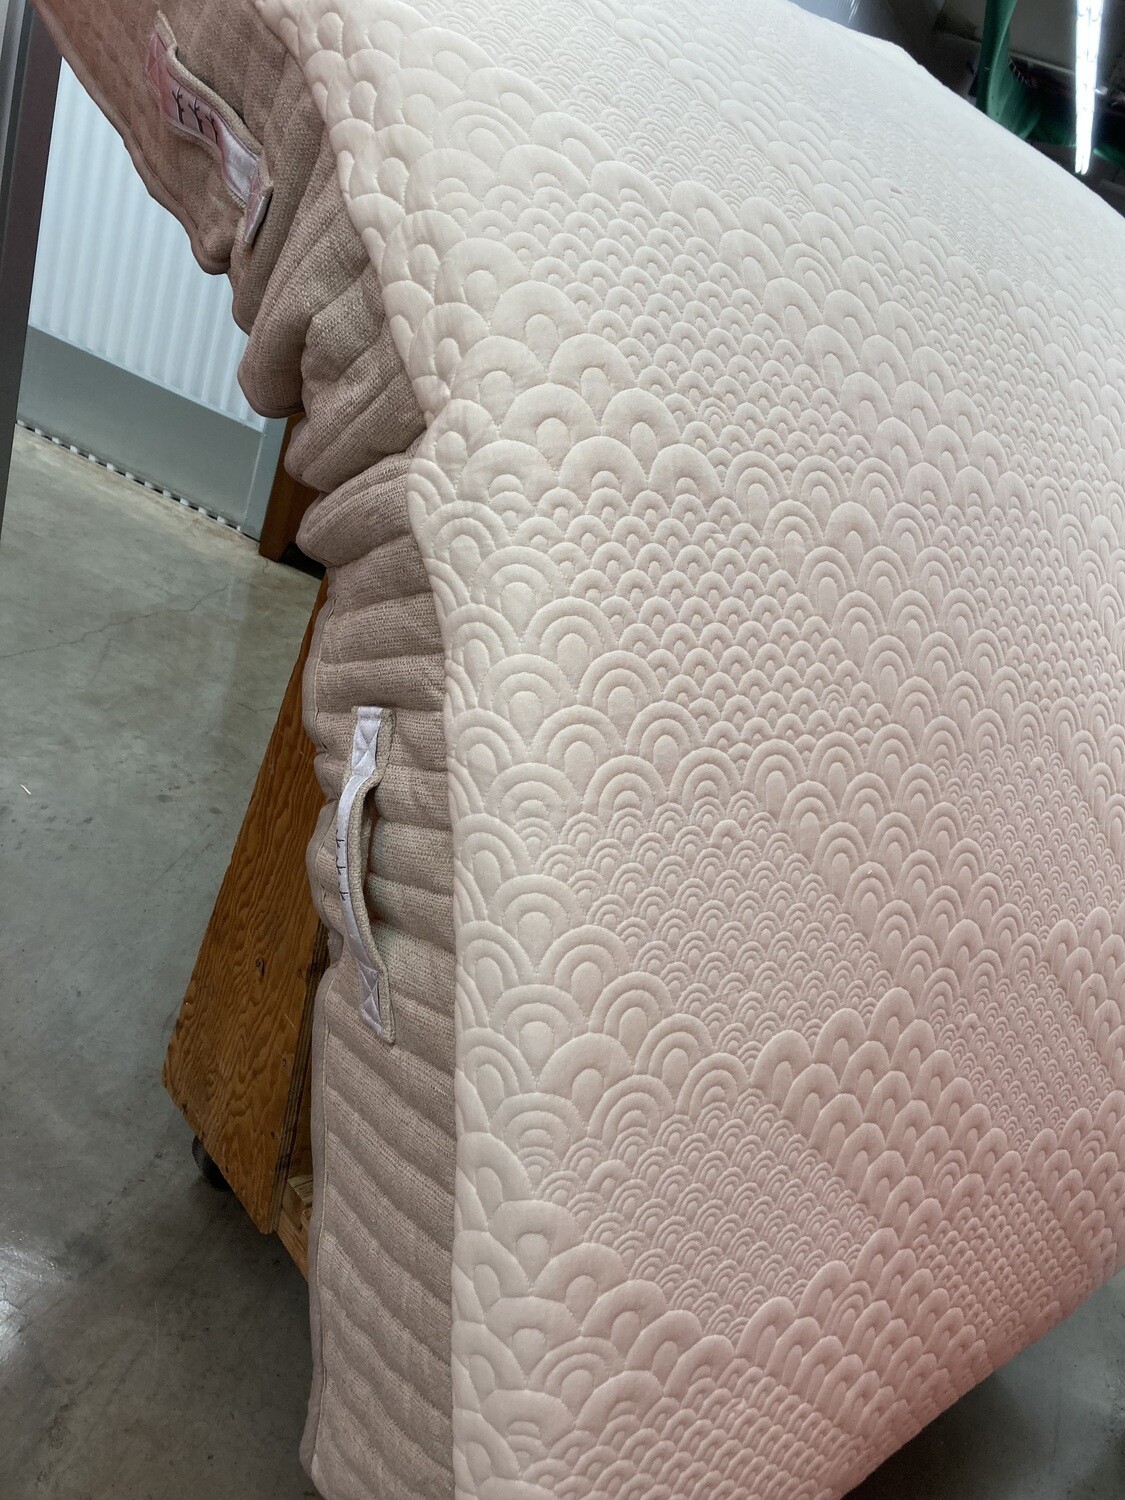 Brentwood Home QUEEN latex hybrid trial mattress, bleach spot #2120